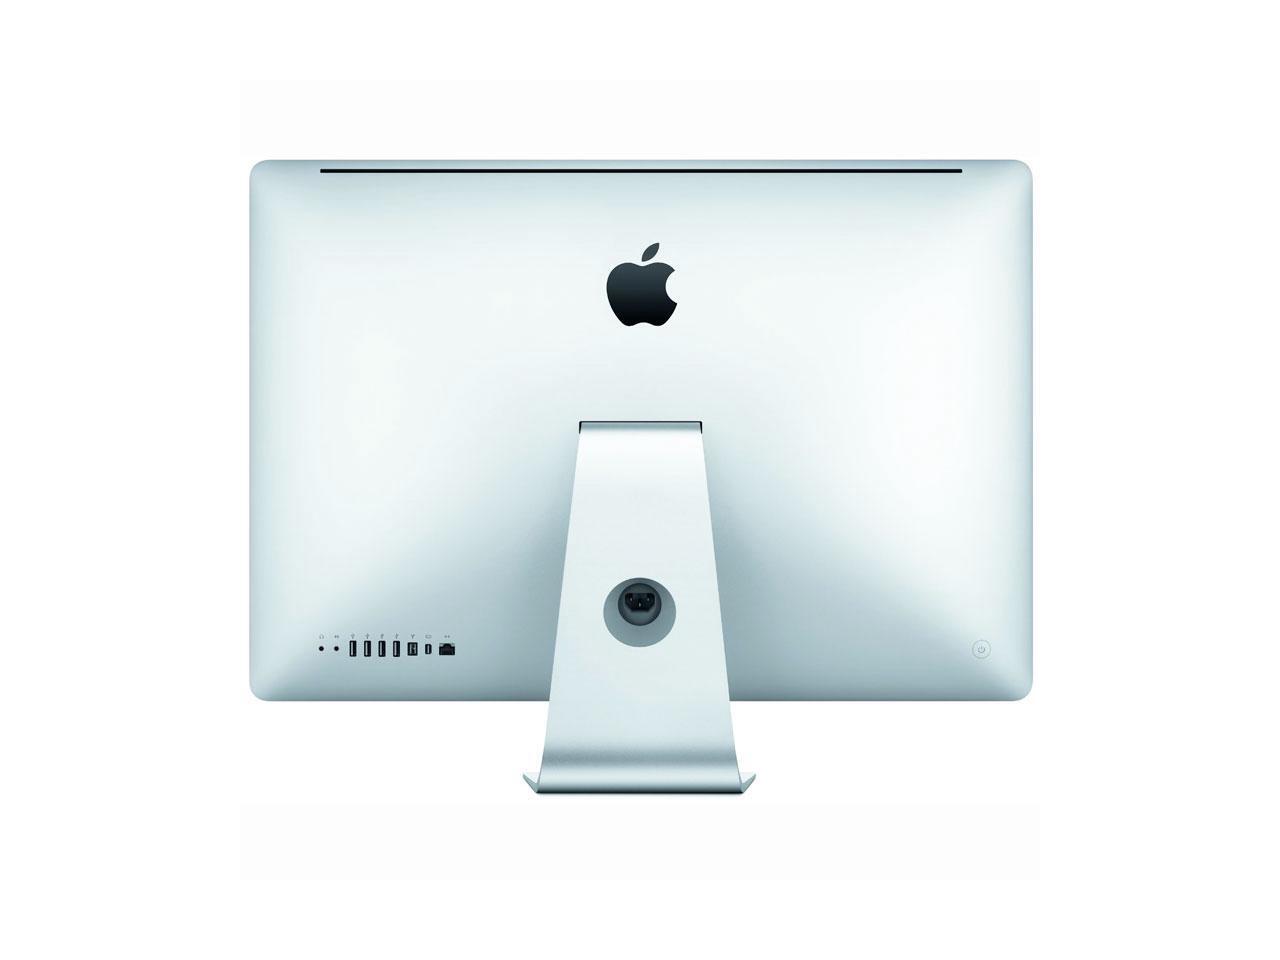 Apple iMac 27" Intel i5 2400 3.10Ghz 4GB RAM 1TB HDD macOS High Sierra Image 1